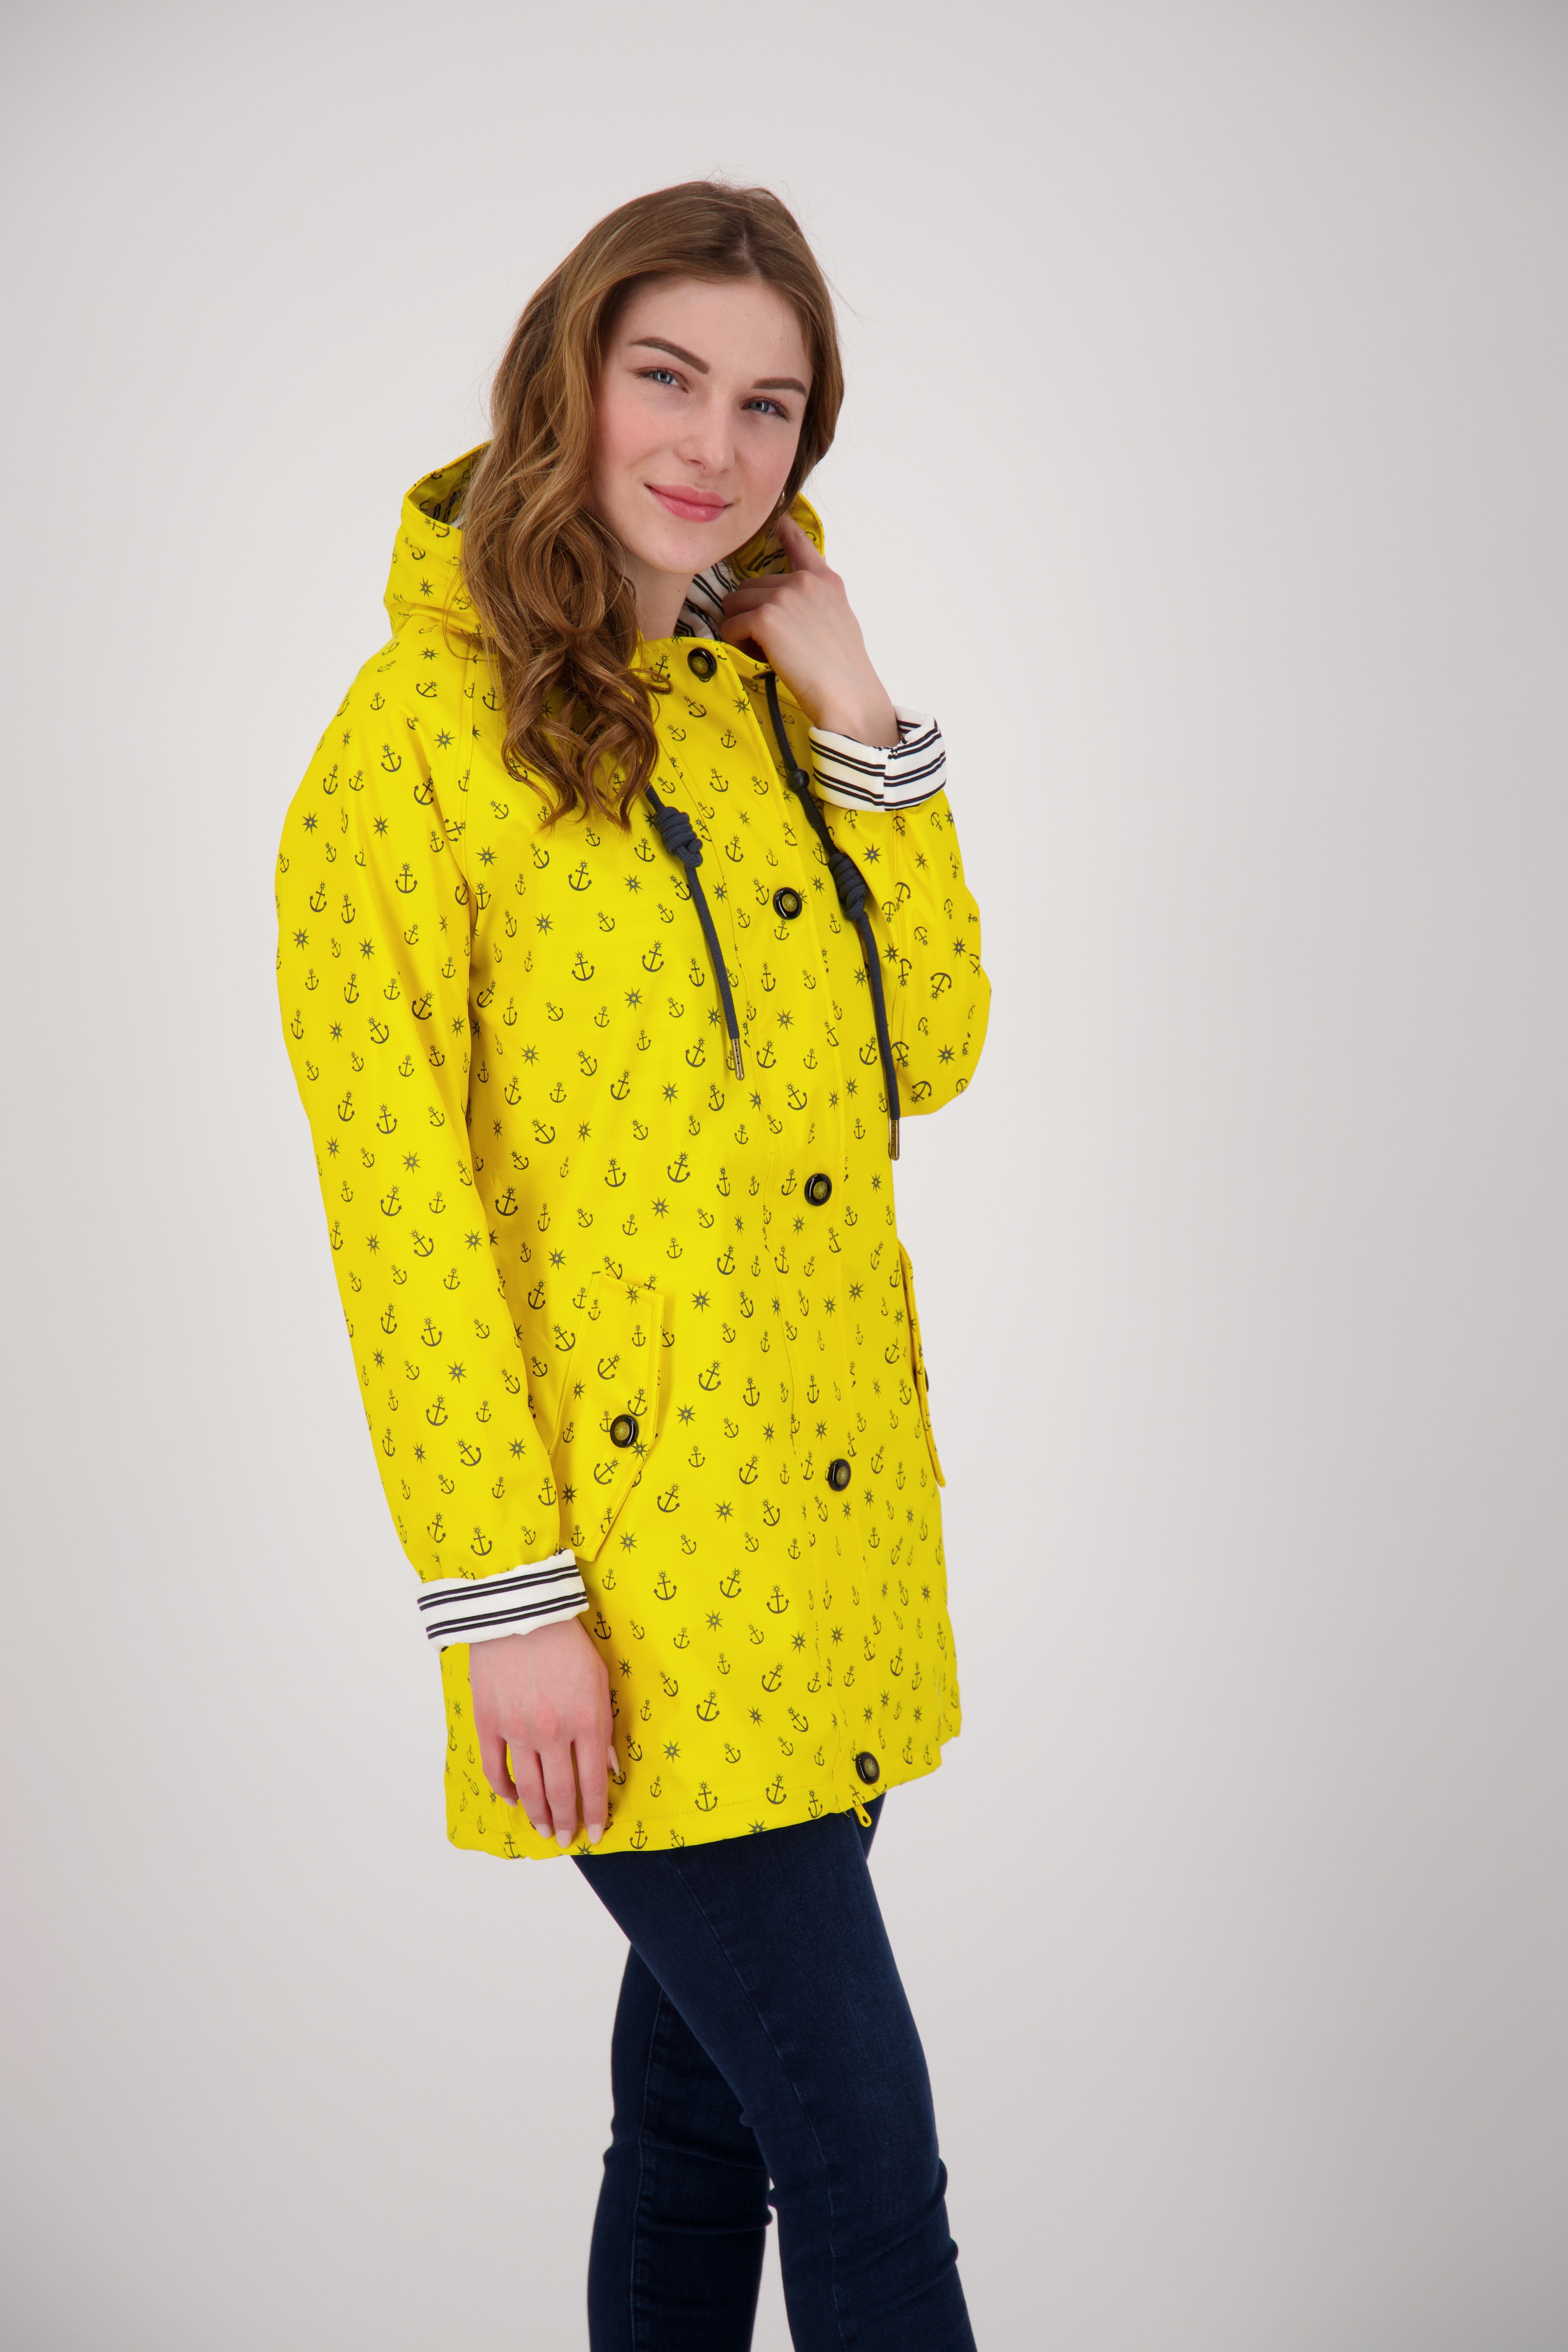 Friesennerz WOMEN auch #ankerglutzauber Größen DEPROC Active in erhältlich CS yellow Großen Regenjacke